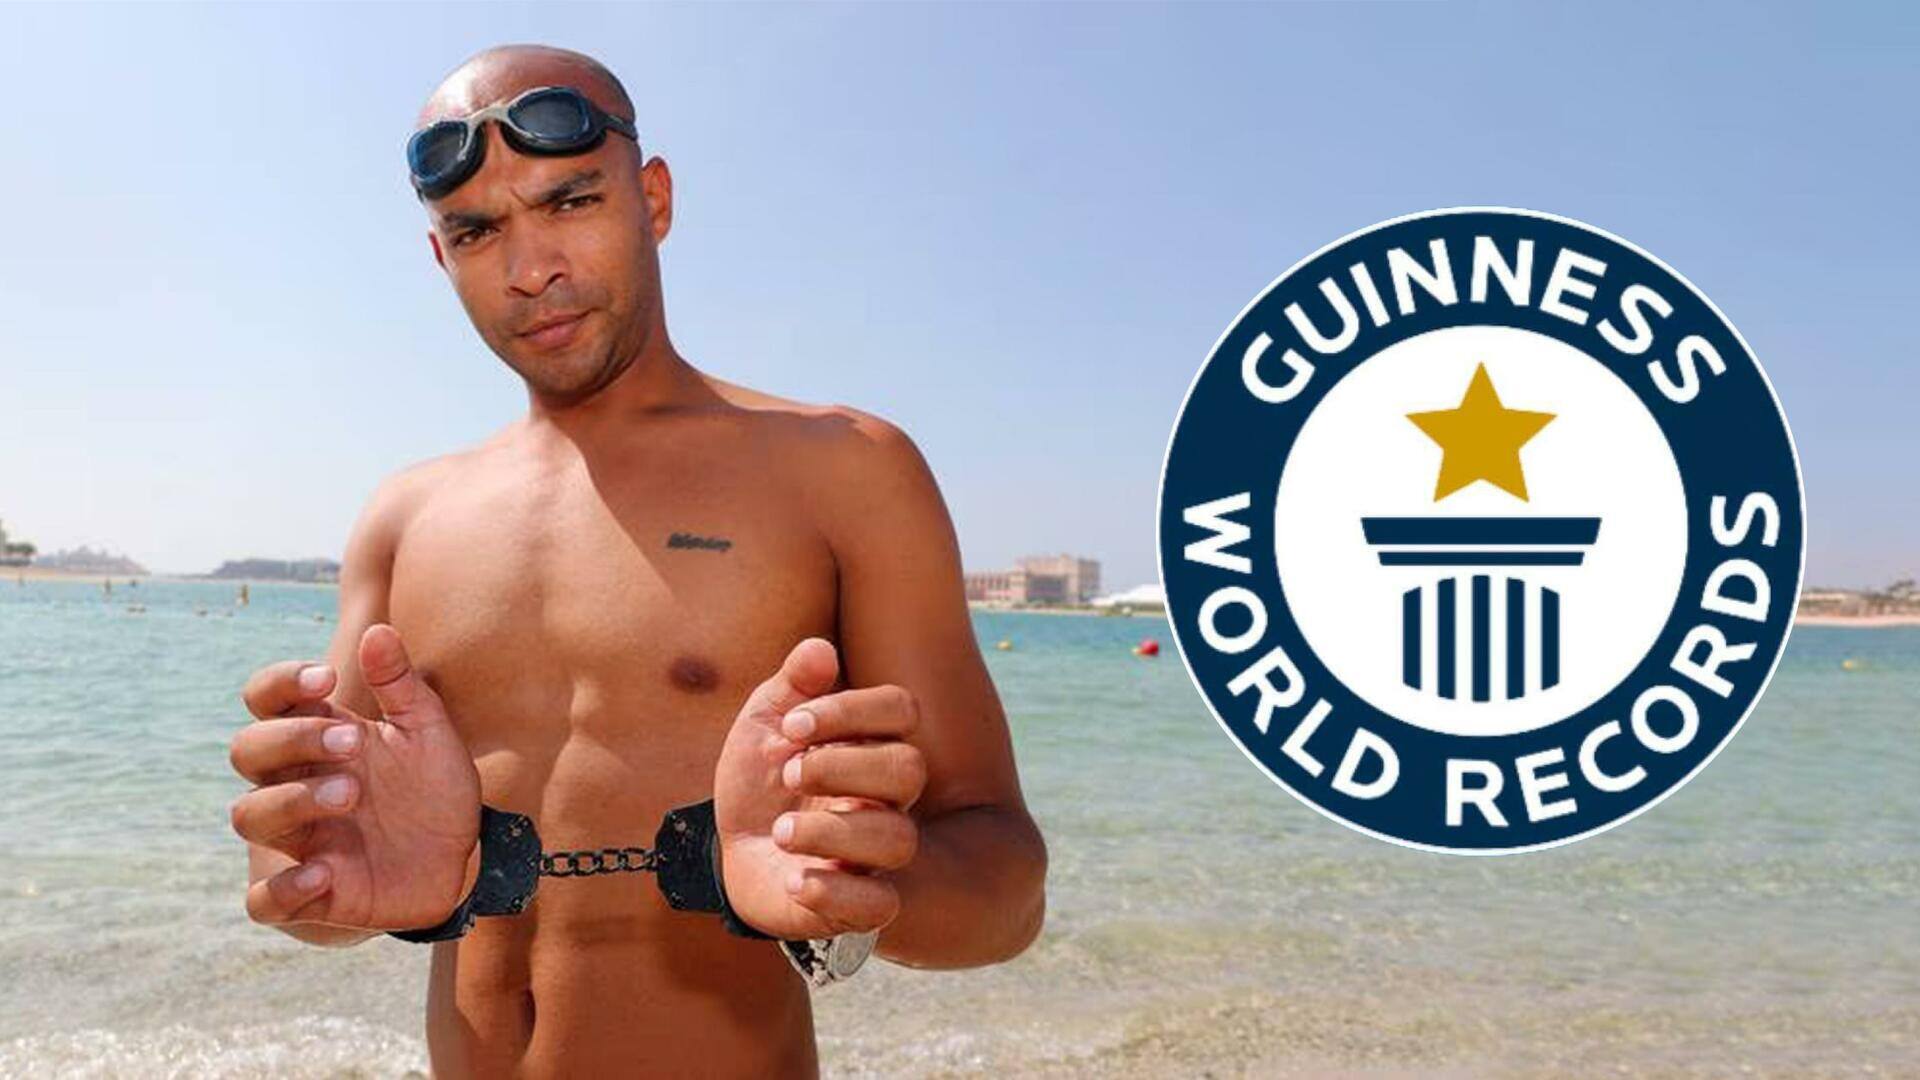 मिस्र के तैराक ने हथकड़ी पहनकर सबसे अधिक दूरी तक तैरकर बनाया विश्व रिकॉर्ड 